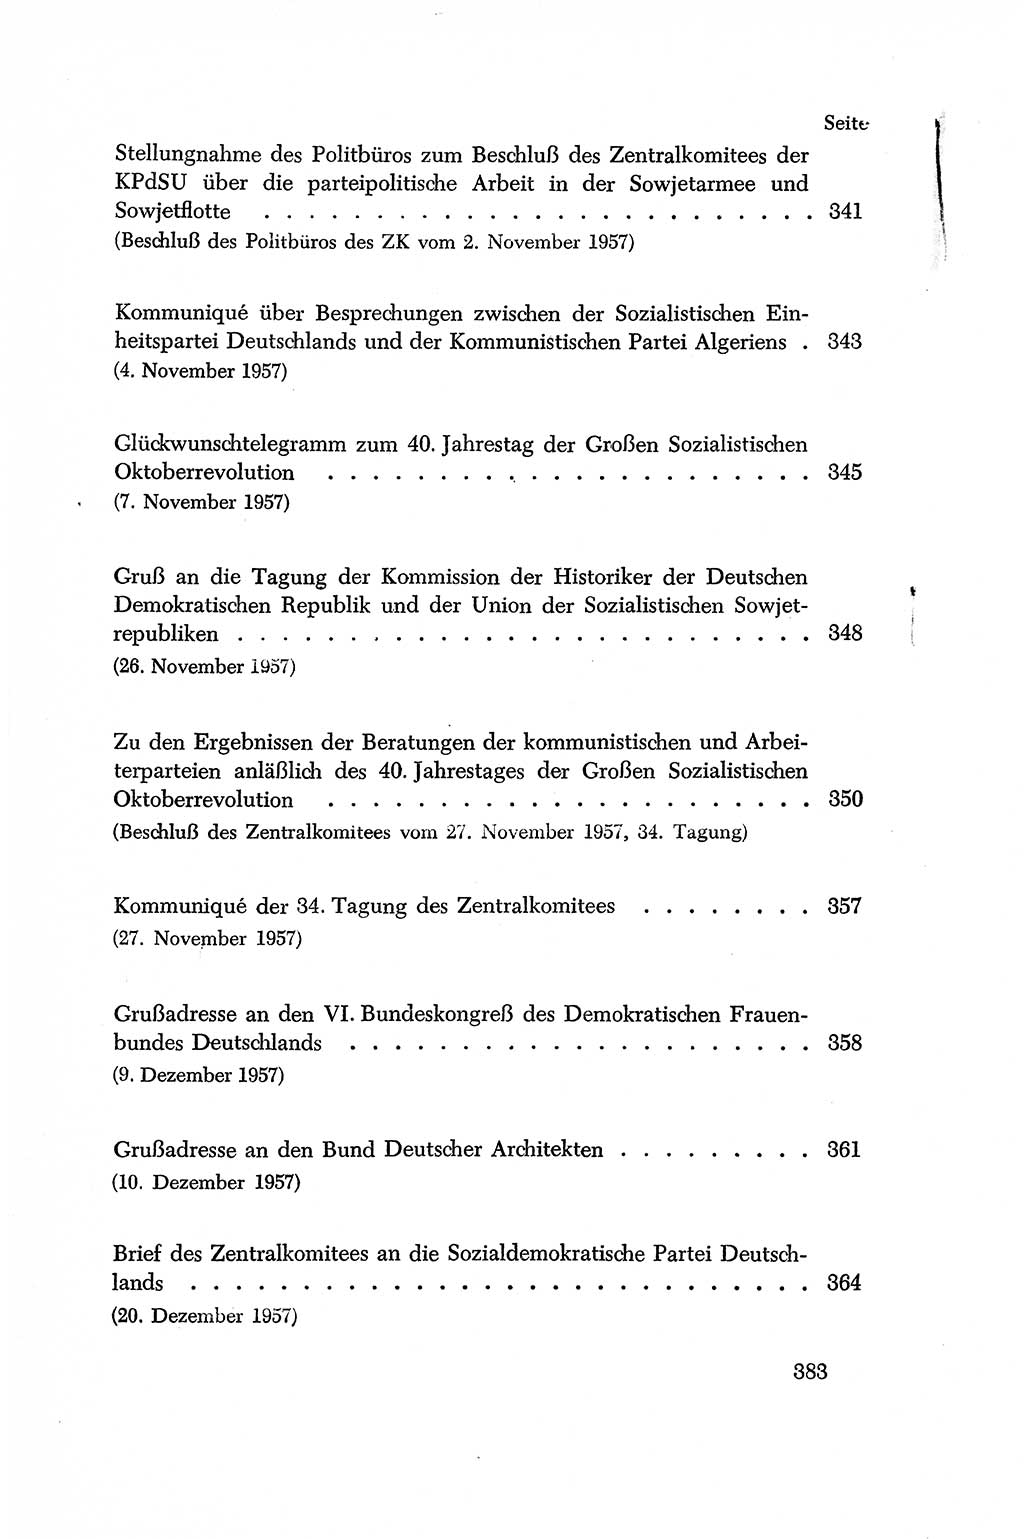 Dokumente der Sozialistischen Einheitspartei Deutschlands (SED) [Deutsche Demokratische Republik (DDR)] 1956-1957, Seite 383 (Dok. SED DDR 1956-1957, S. 383)